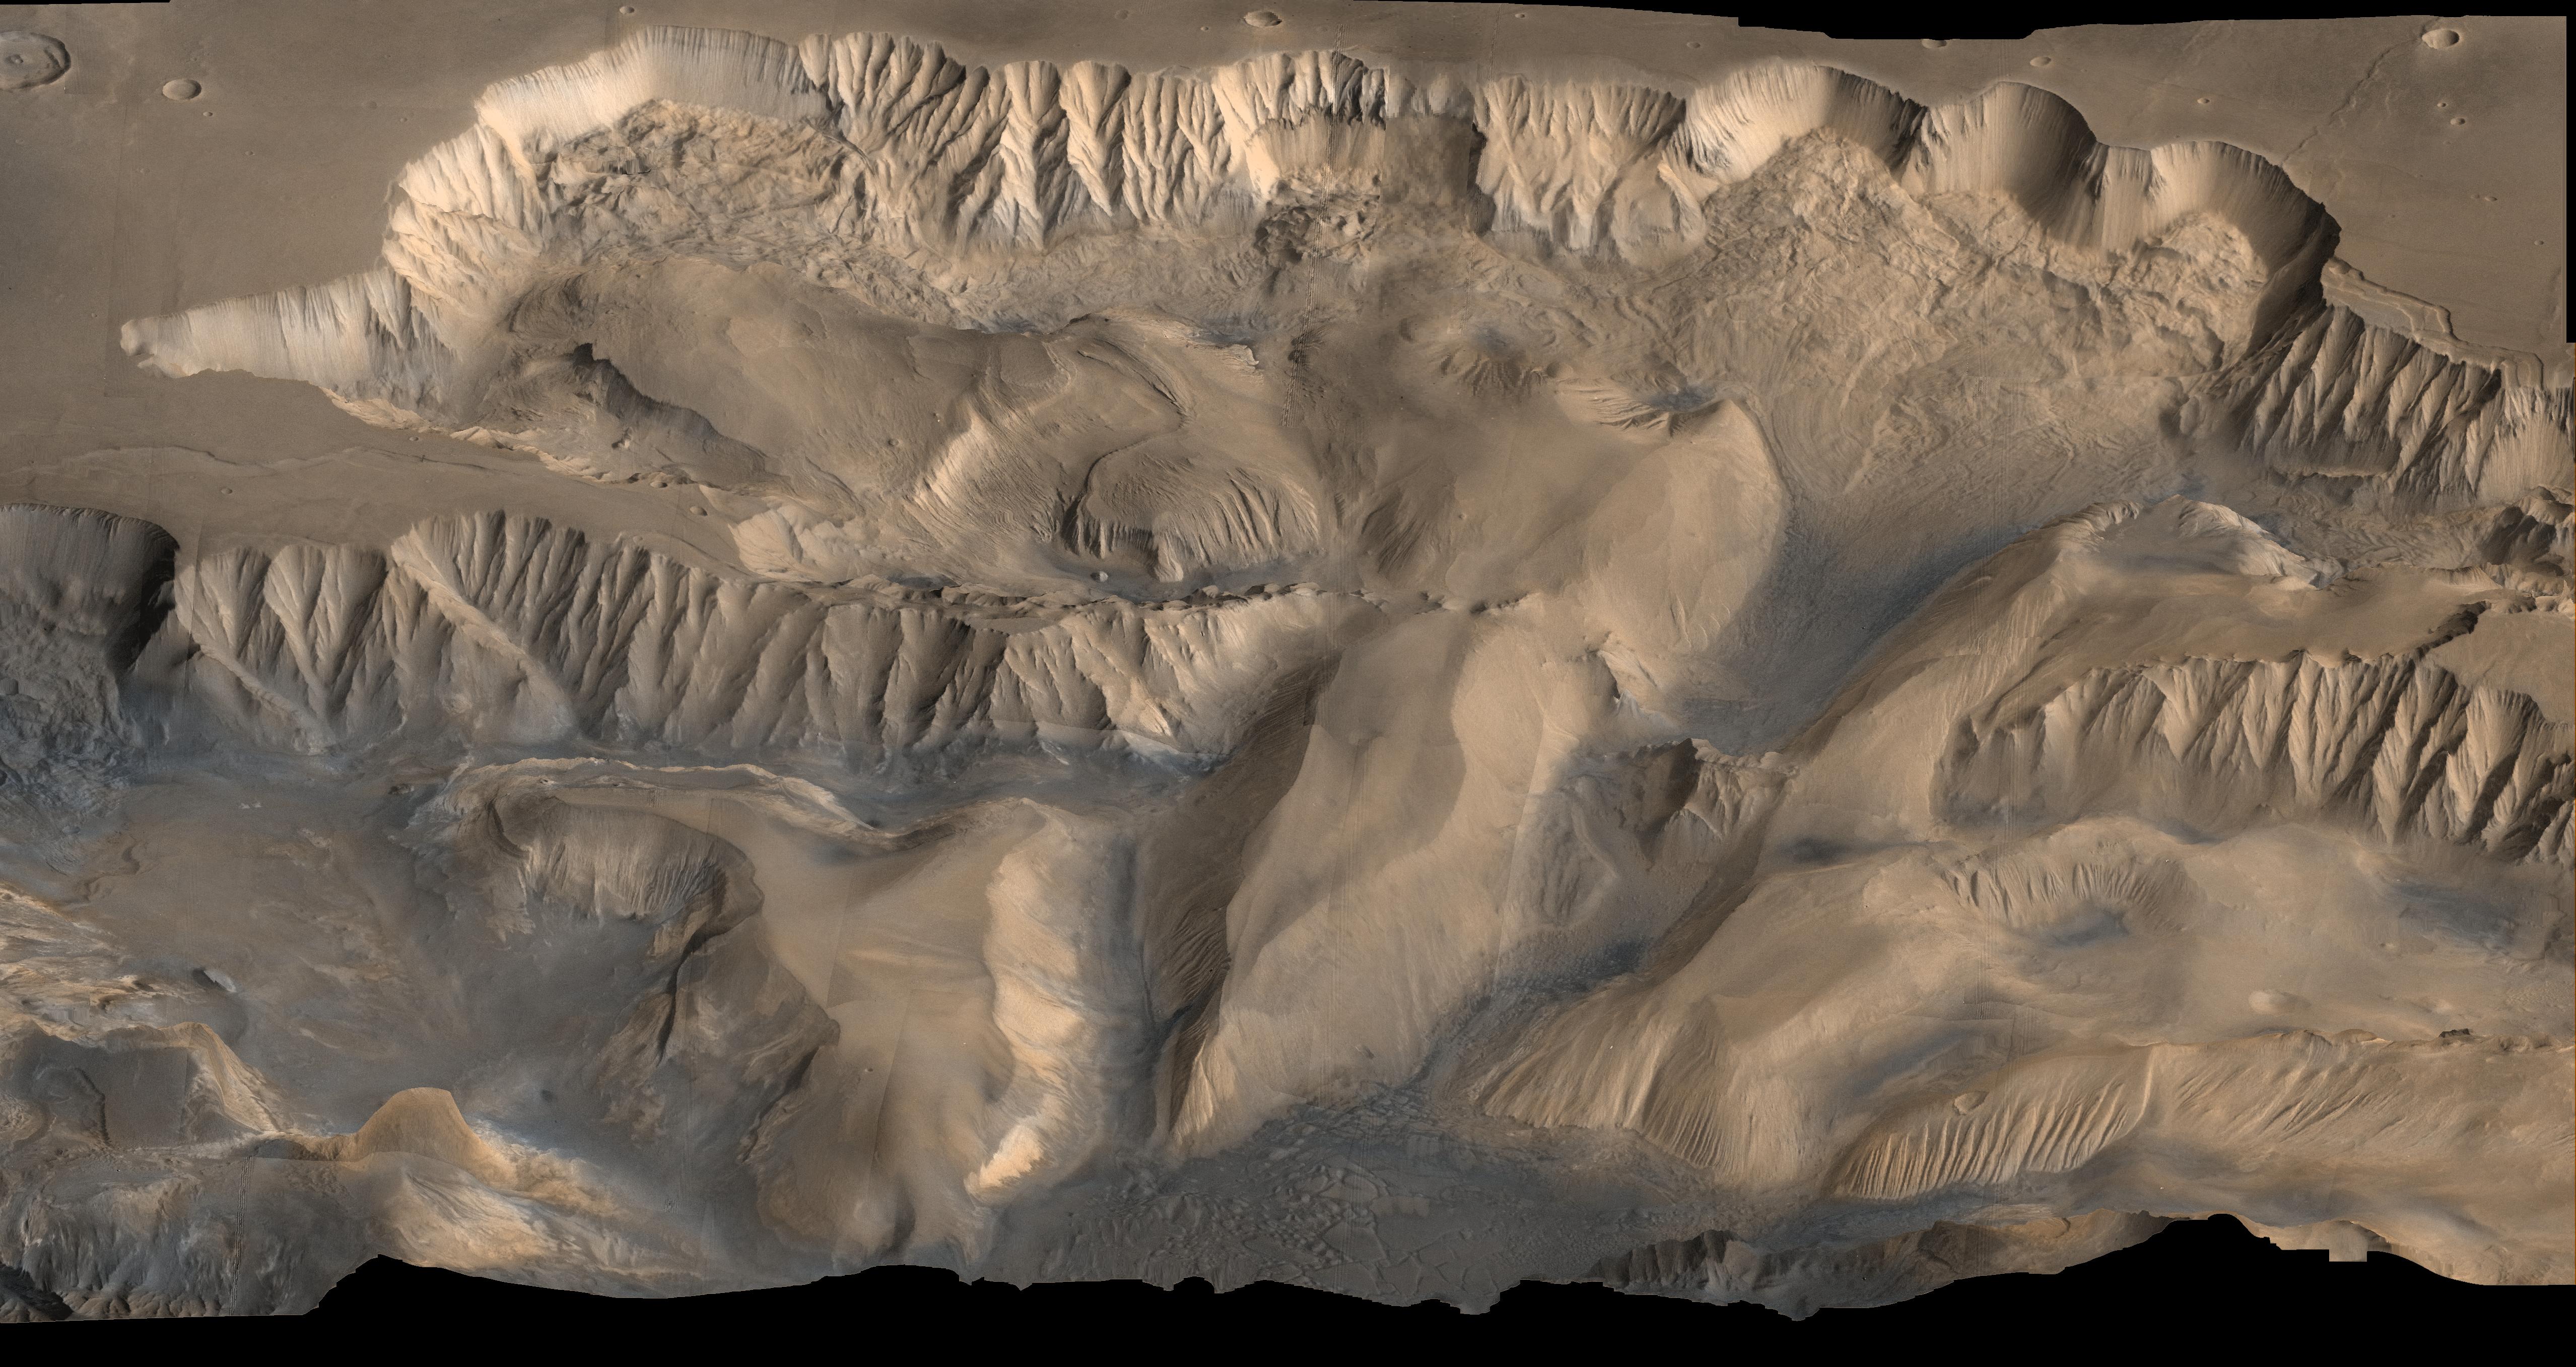 Oblique View of Valles Marineris